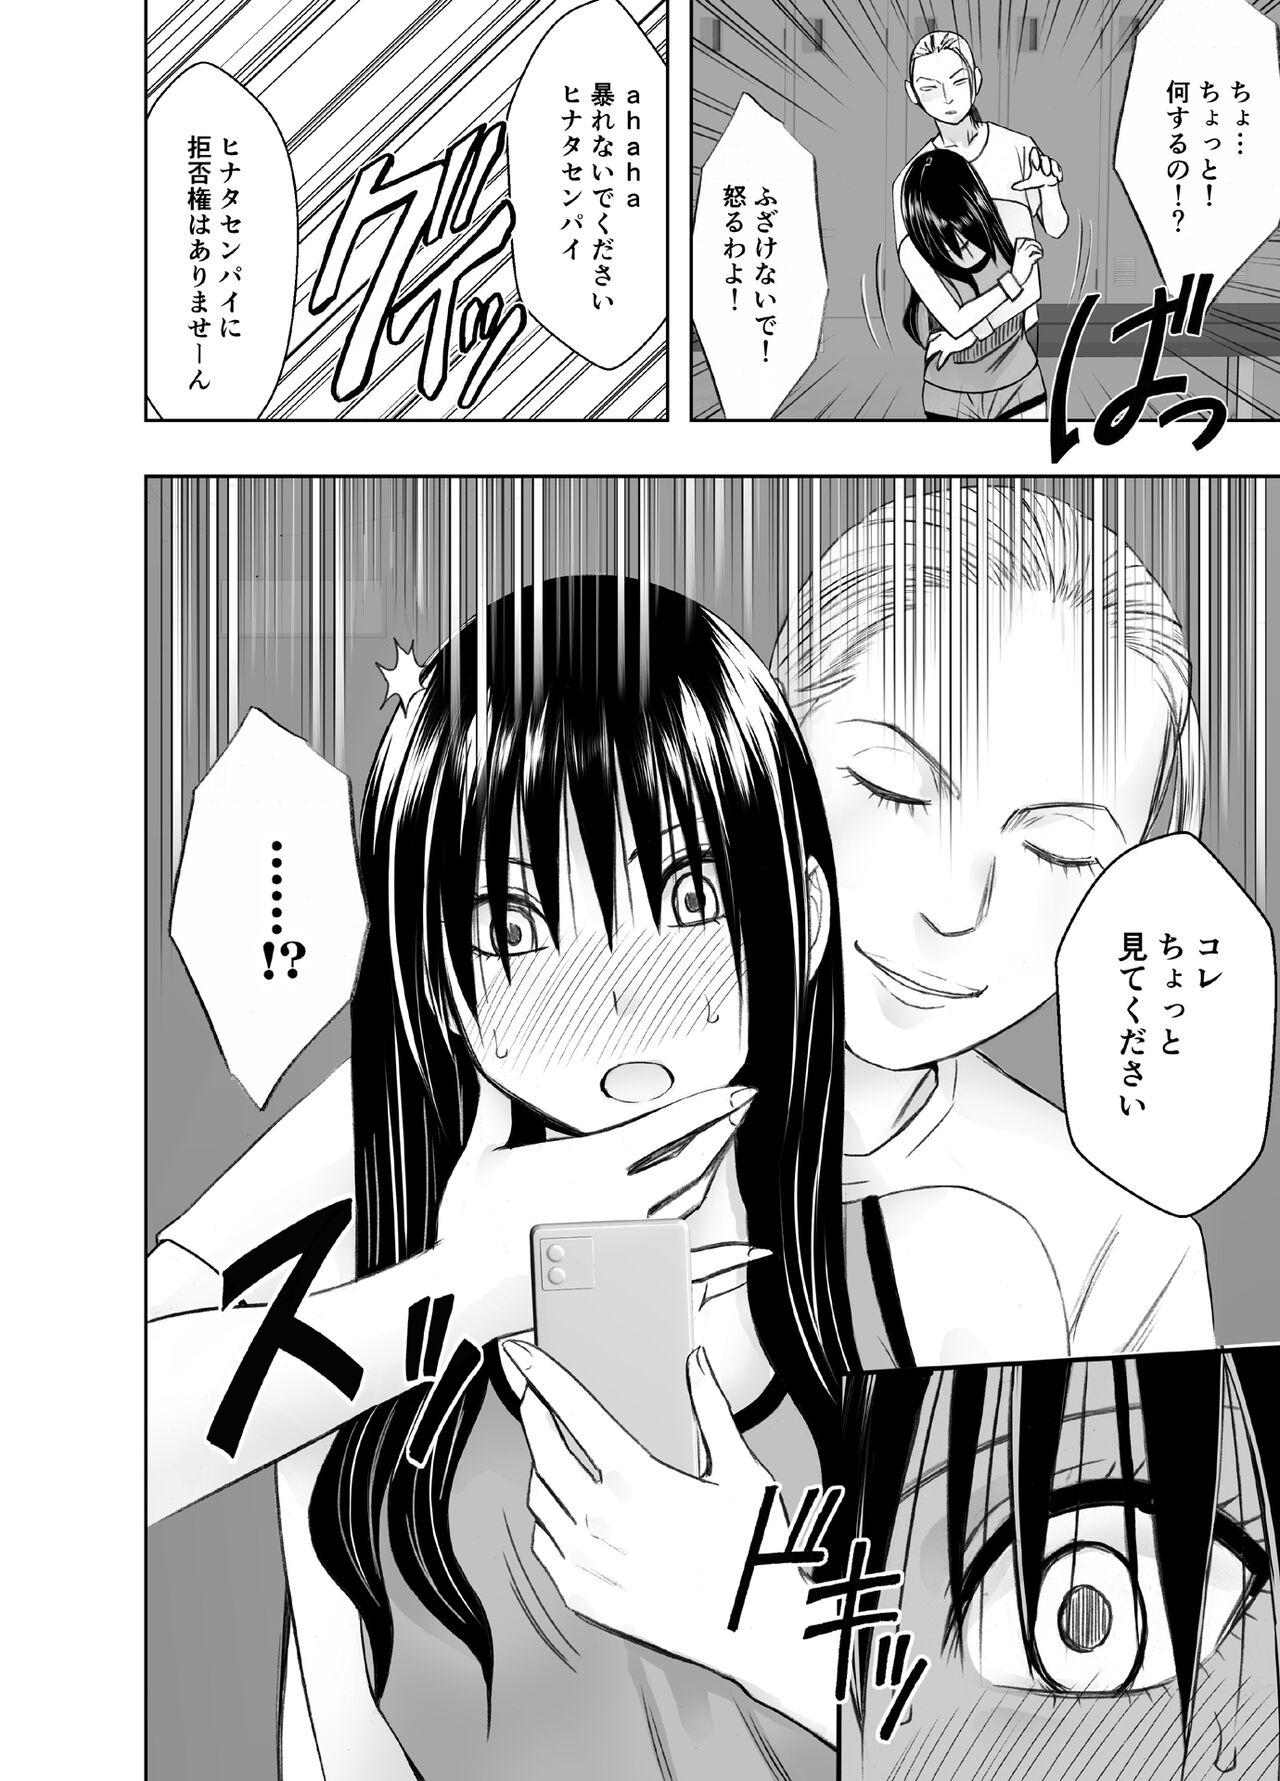 Indo rezu no ryugakusei ni isyuukan moteasobateta watashi - Original 4some - Page 8